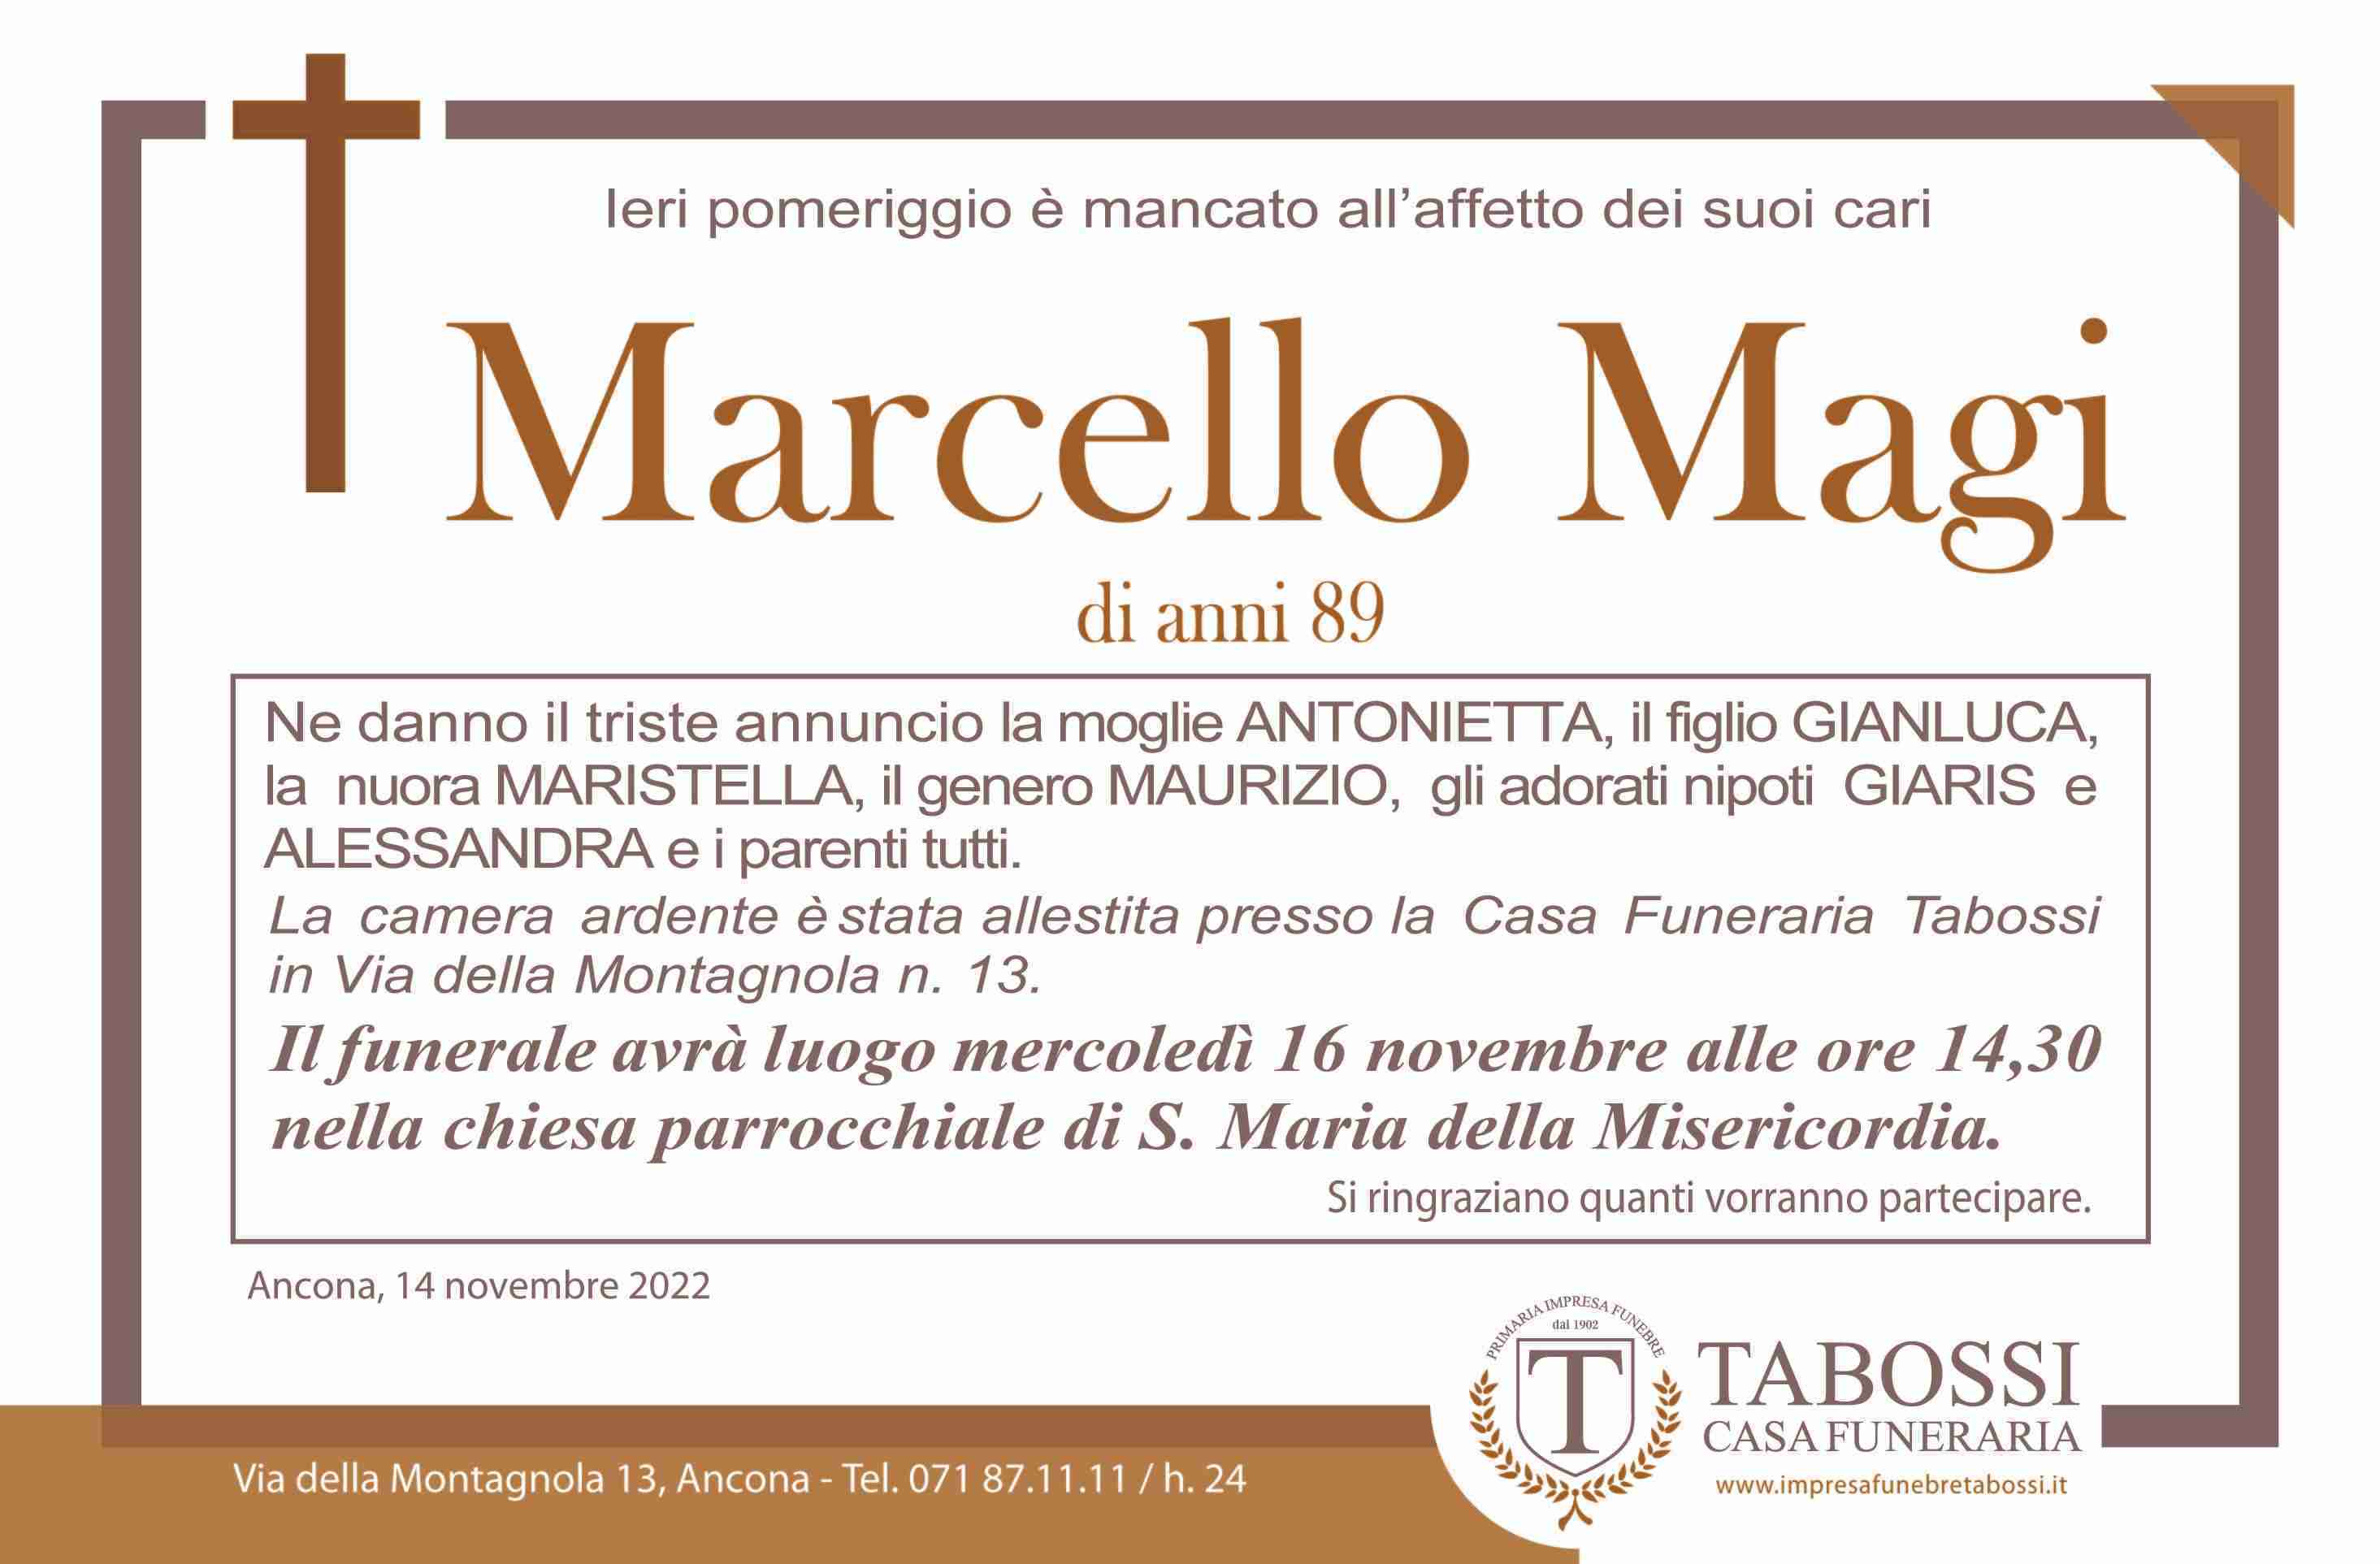 Marcello Magi